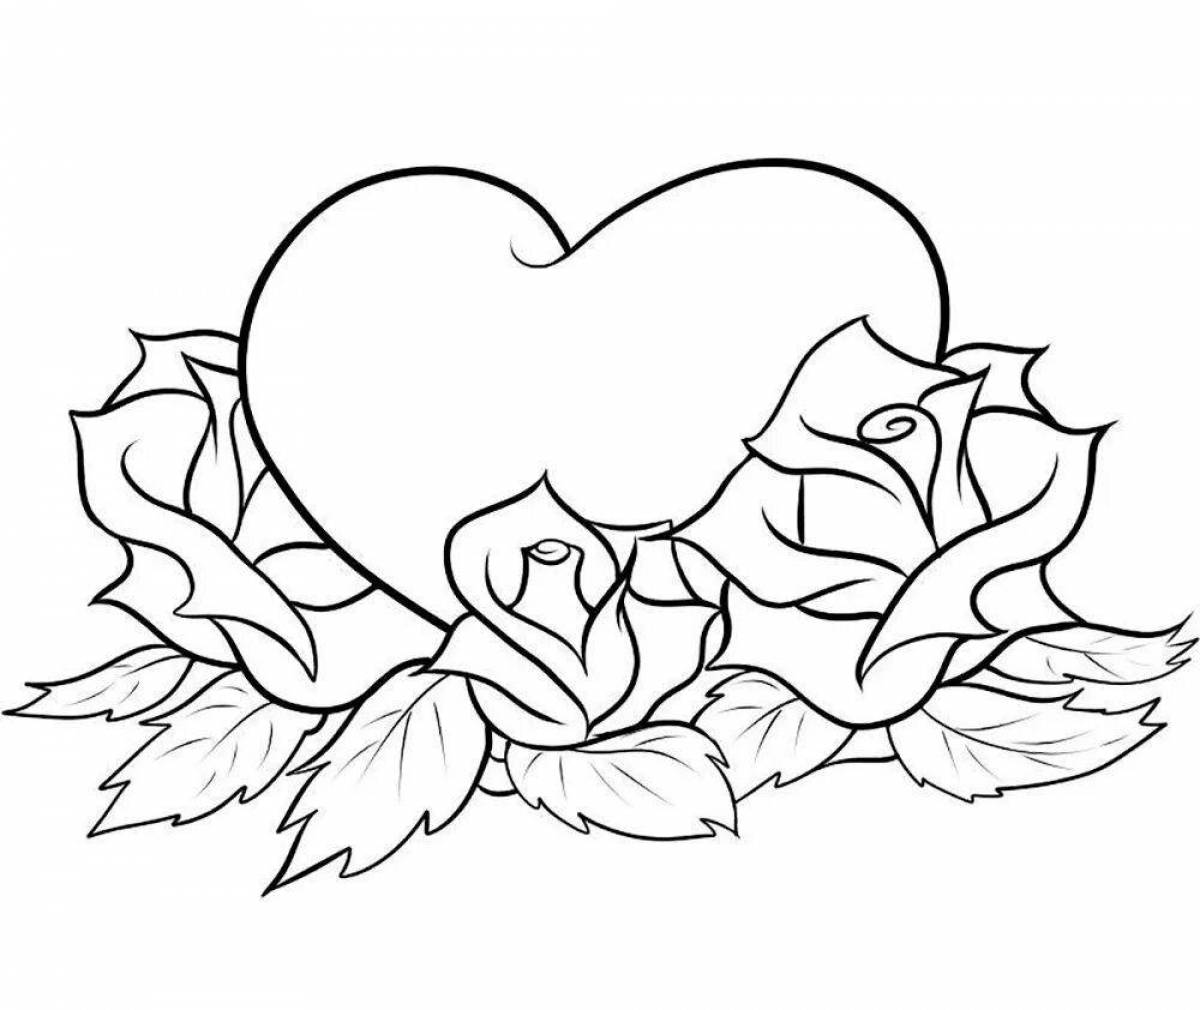 Рисунки для срисовки на лист а4. Раскраска сердечко. Сердце картинка раскраска. Раскраска сердечки красивые.